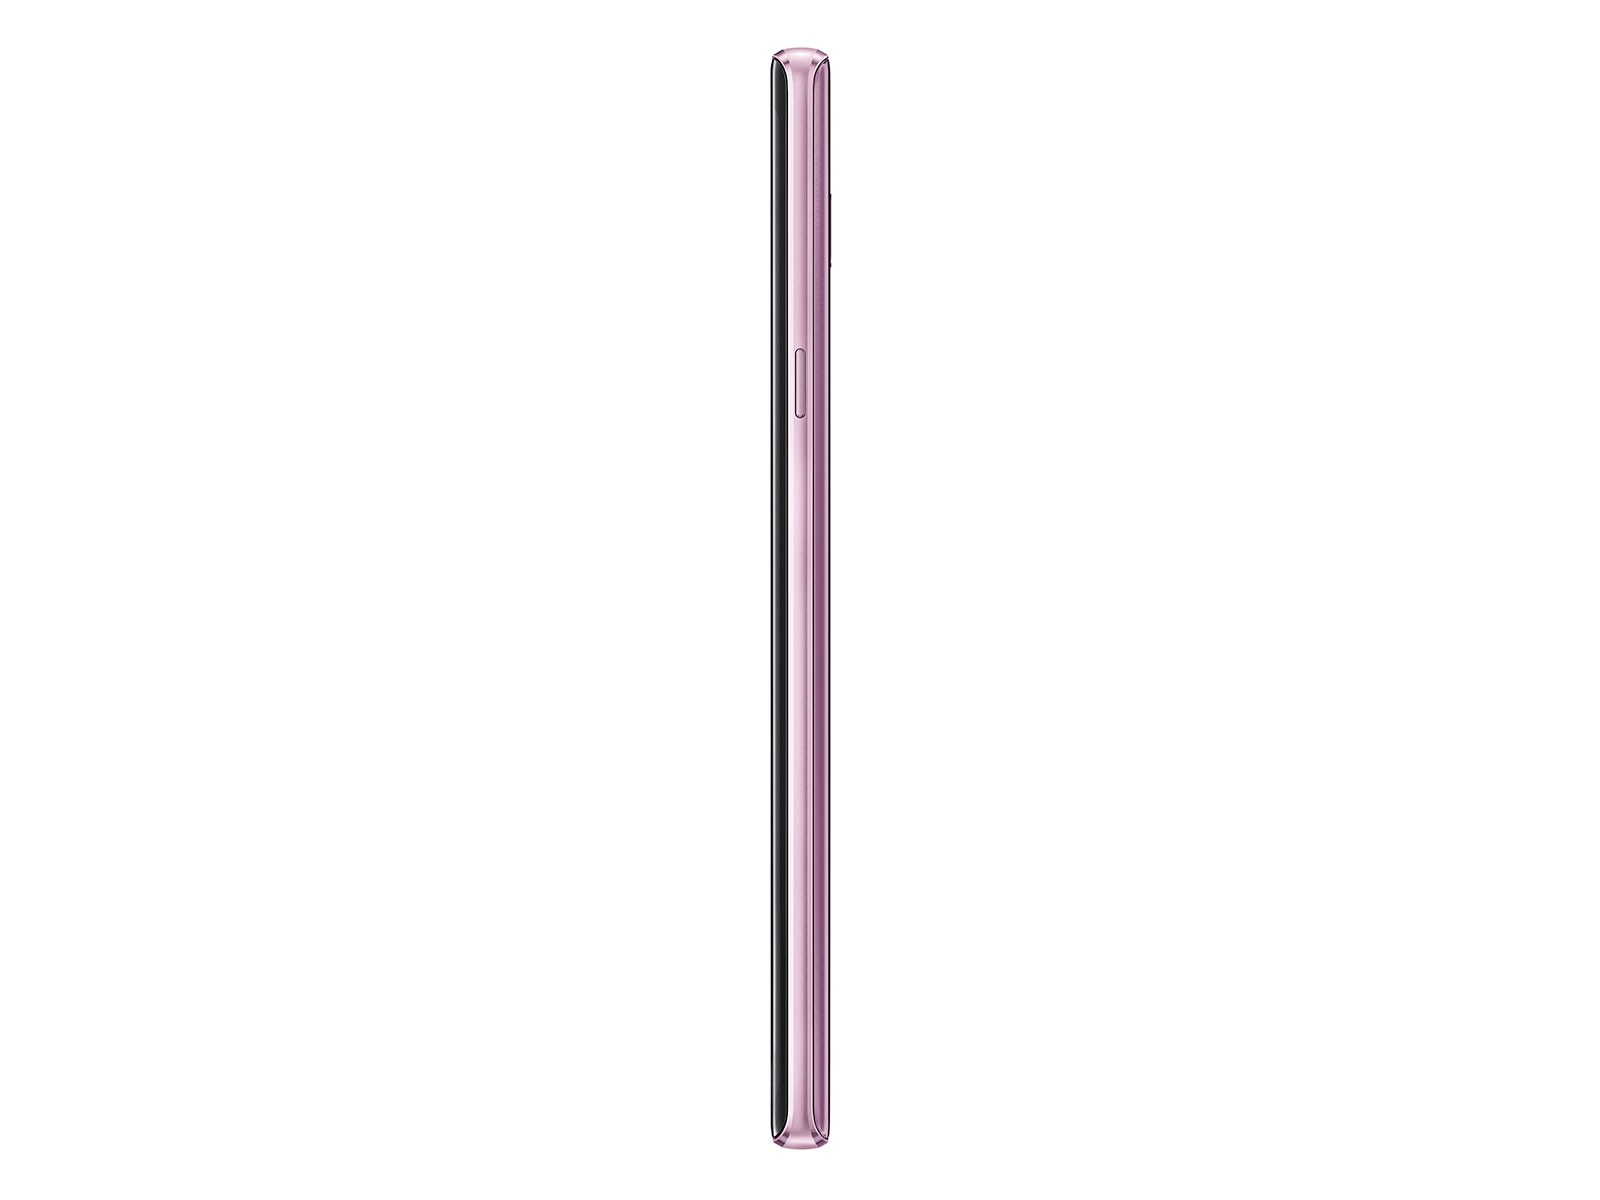 スマートフォン/携帯電話 スマートフォン本体 Samsung Galaxy Note9 128 GB (Unlocked) : Lavender Purple | Samsung US